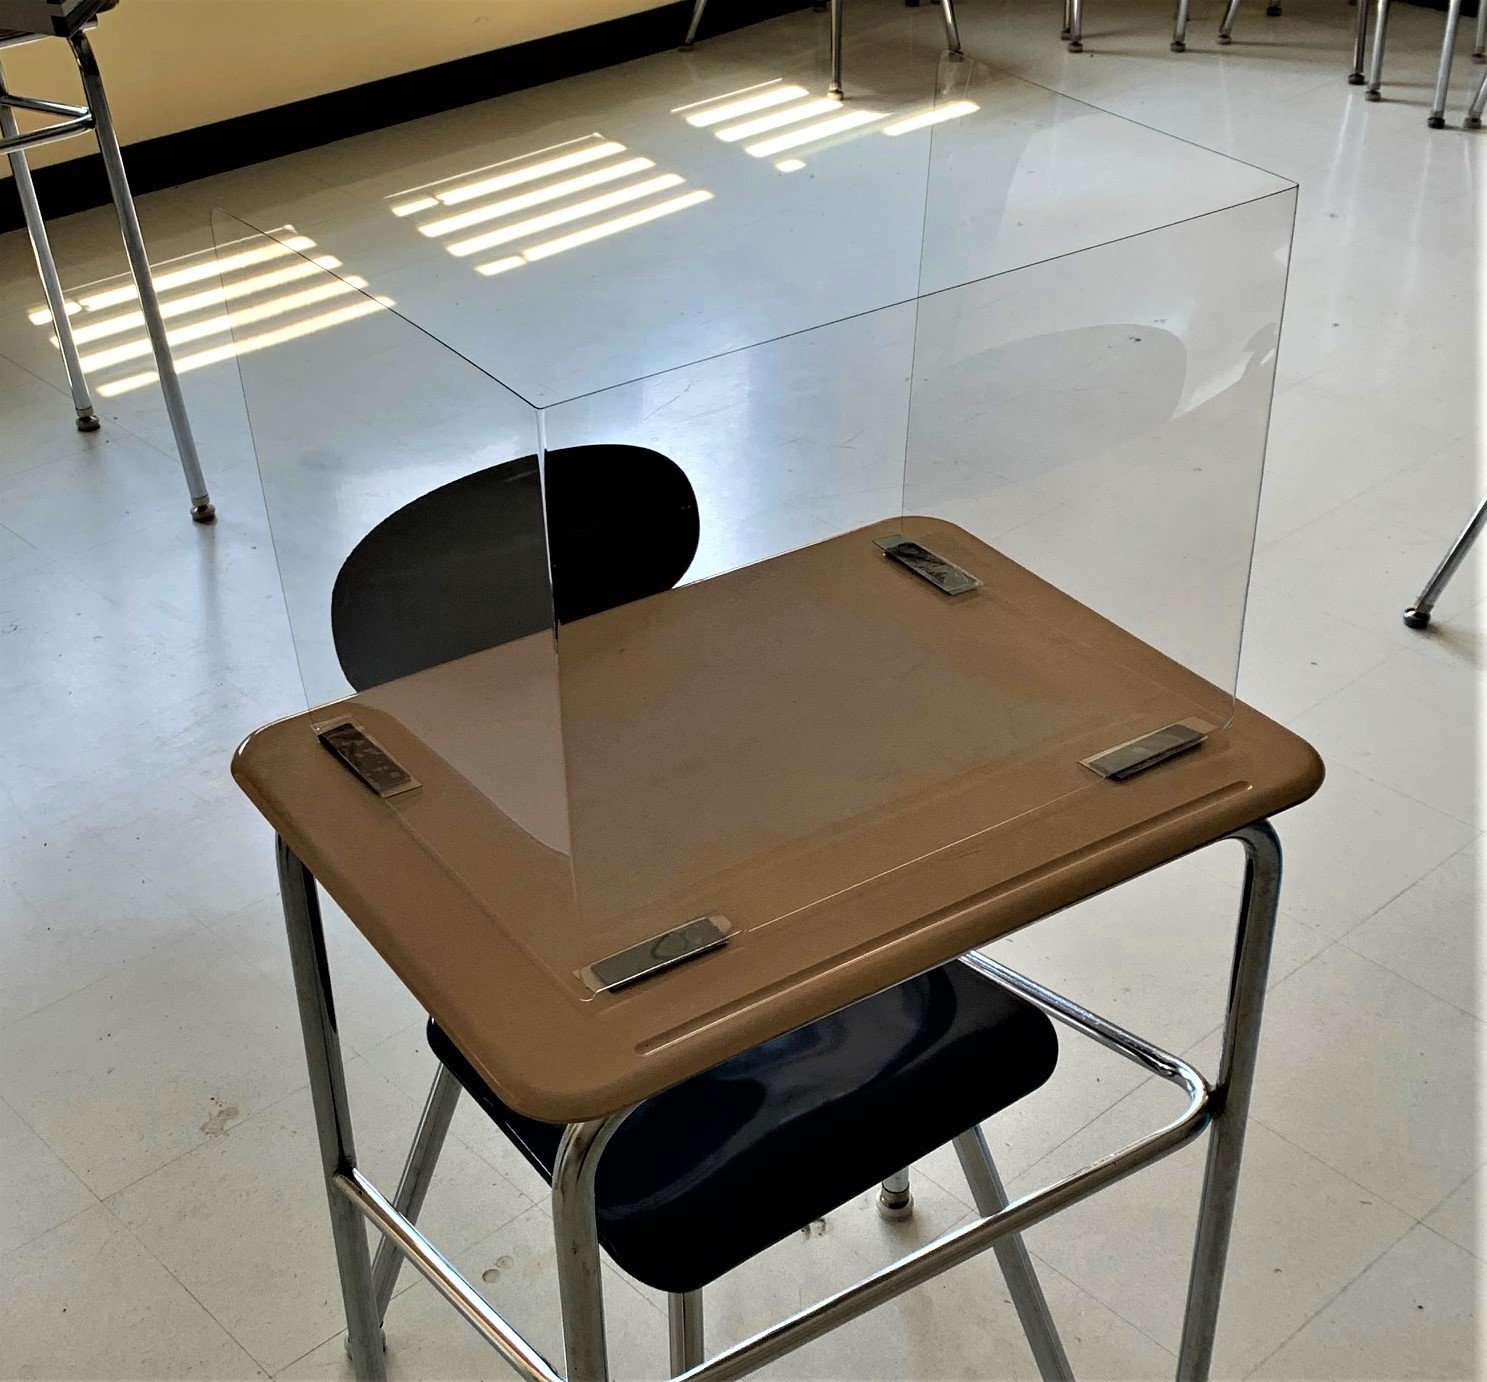 FABSAFEGUARDPLUS - One Safeguard Plus Student Desk Shield - Single